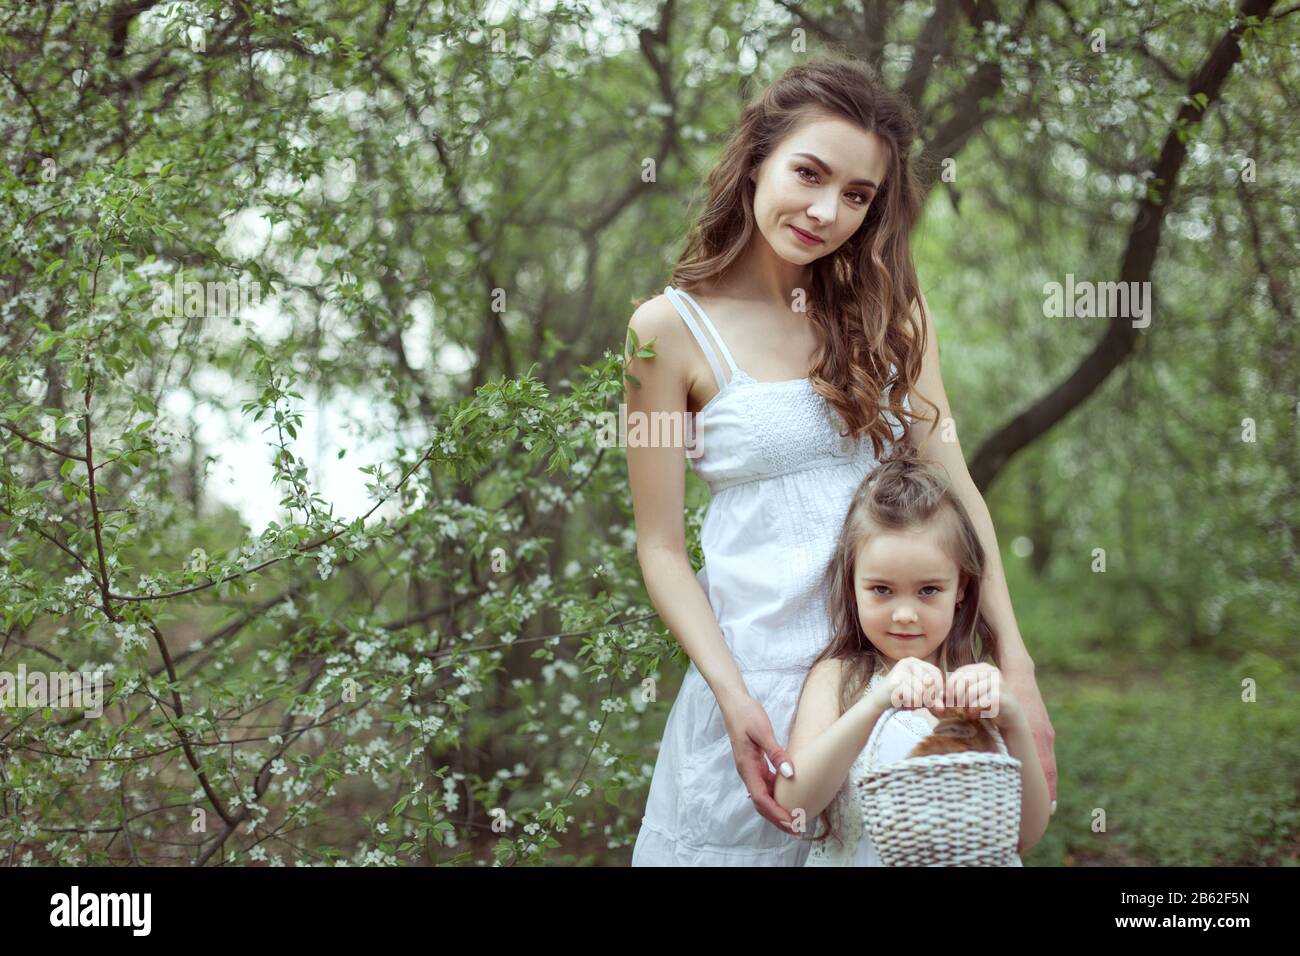 Junge schöne Mutter und ihre Tochter stehen im Wald. Das Kind hält einen Korb mit einem Kaninchen. Stockfoto